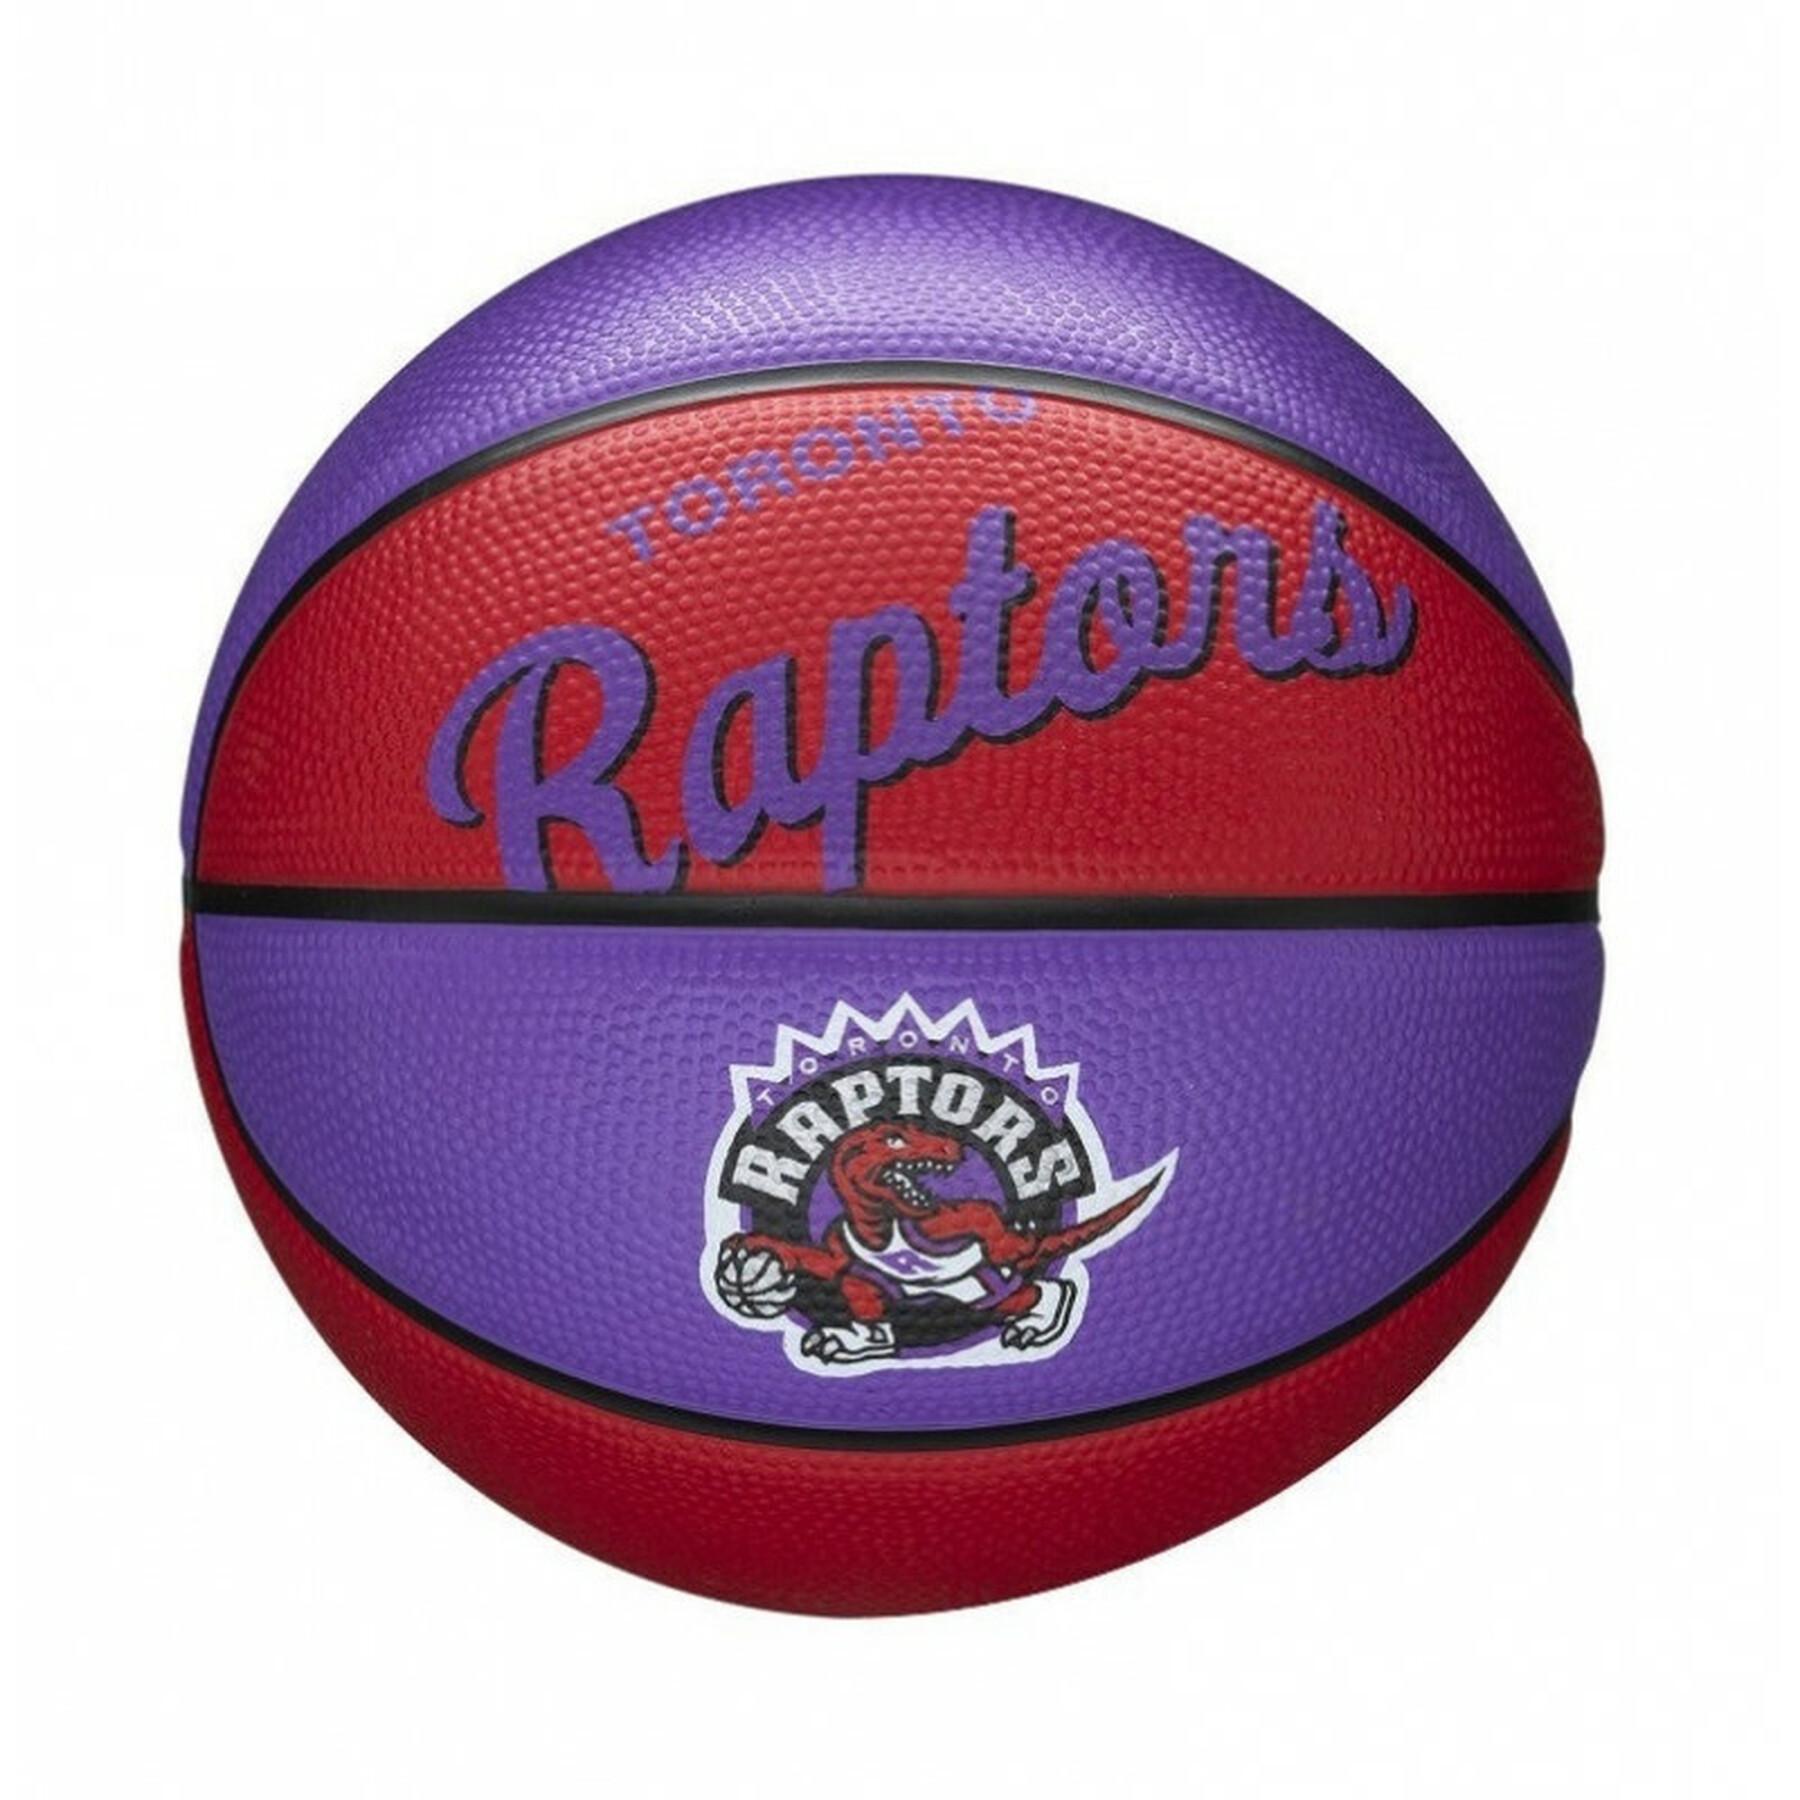 Mini balón retro de la nba Toronto Raptors